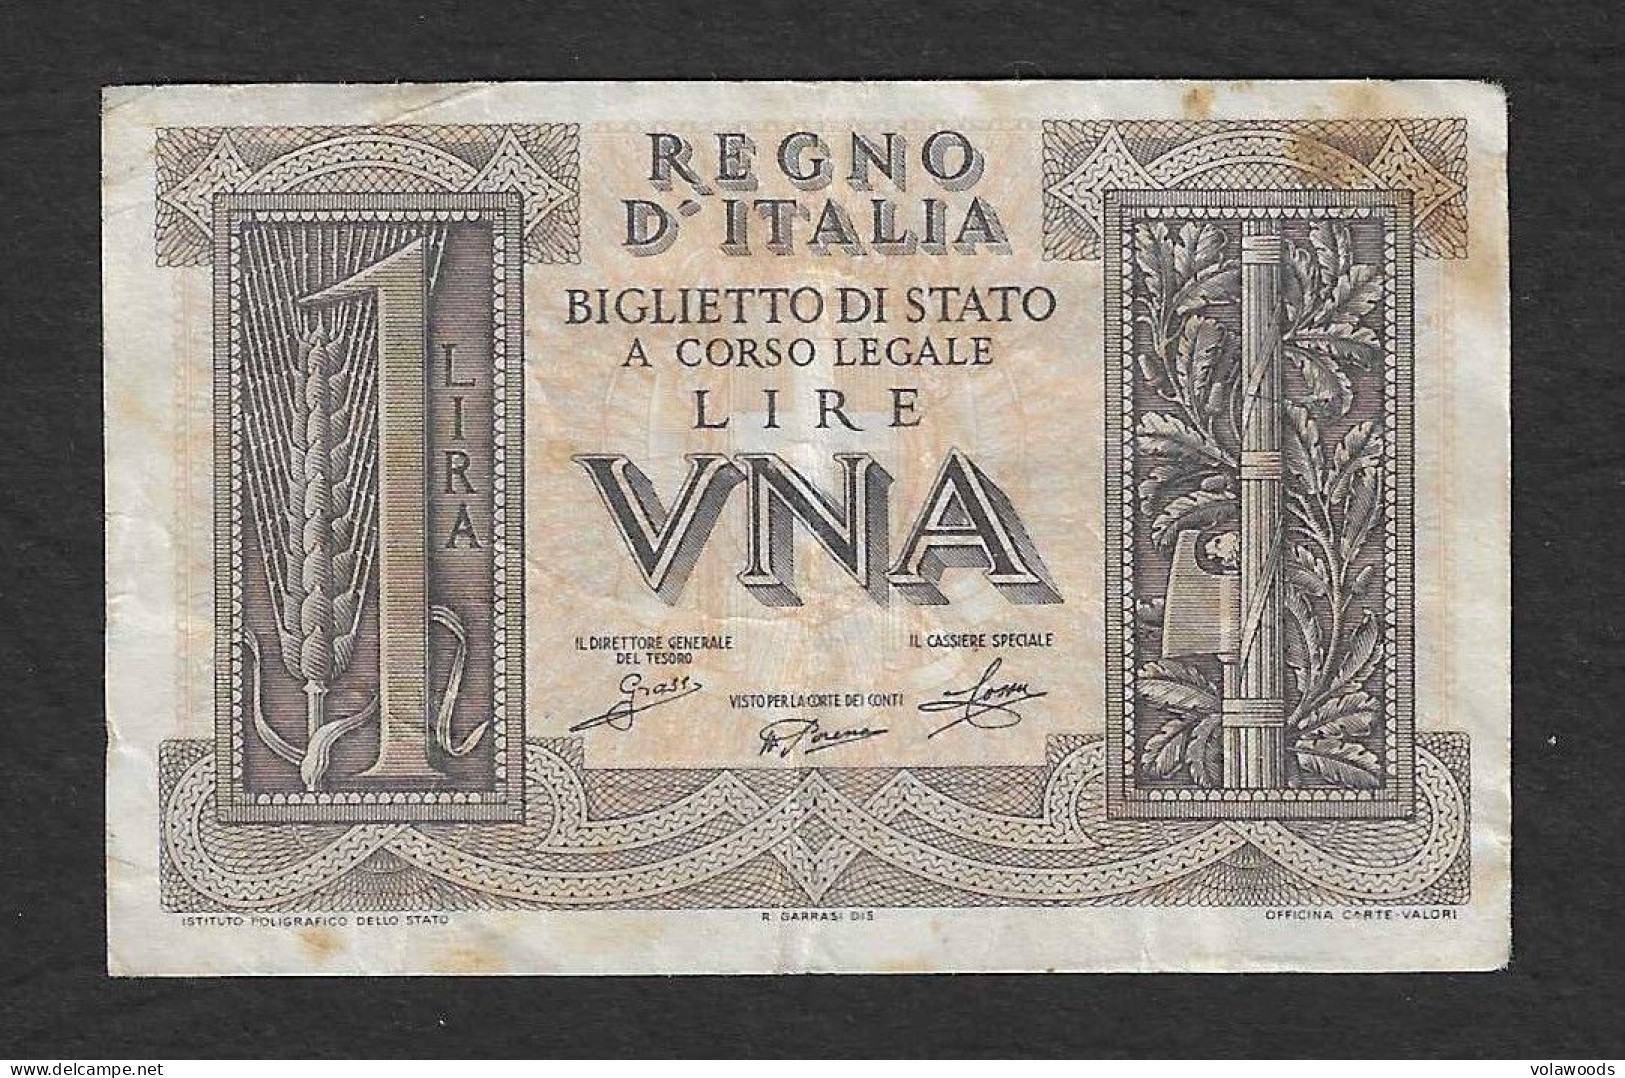 Italia - Banconota Circolata Da 1 Lira "Impero" P-26 - 1939 #17 - Regno D'Italia – 1 Lira